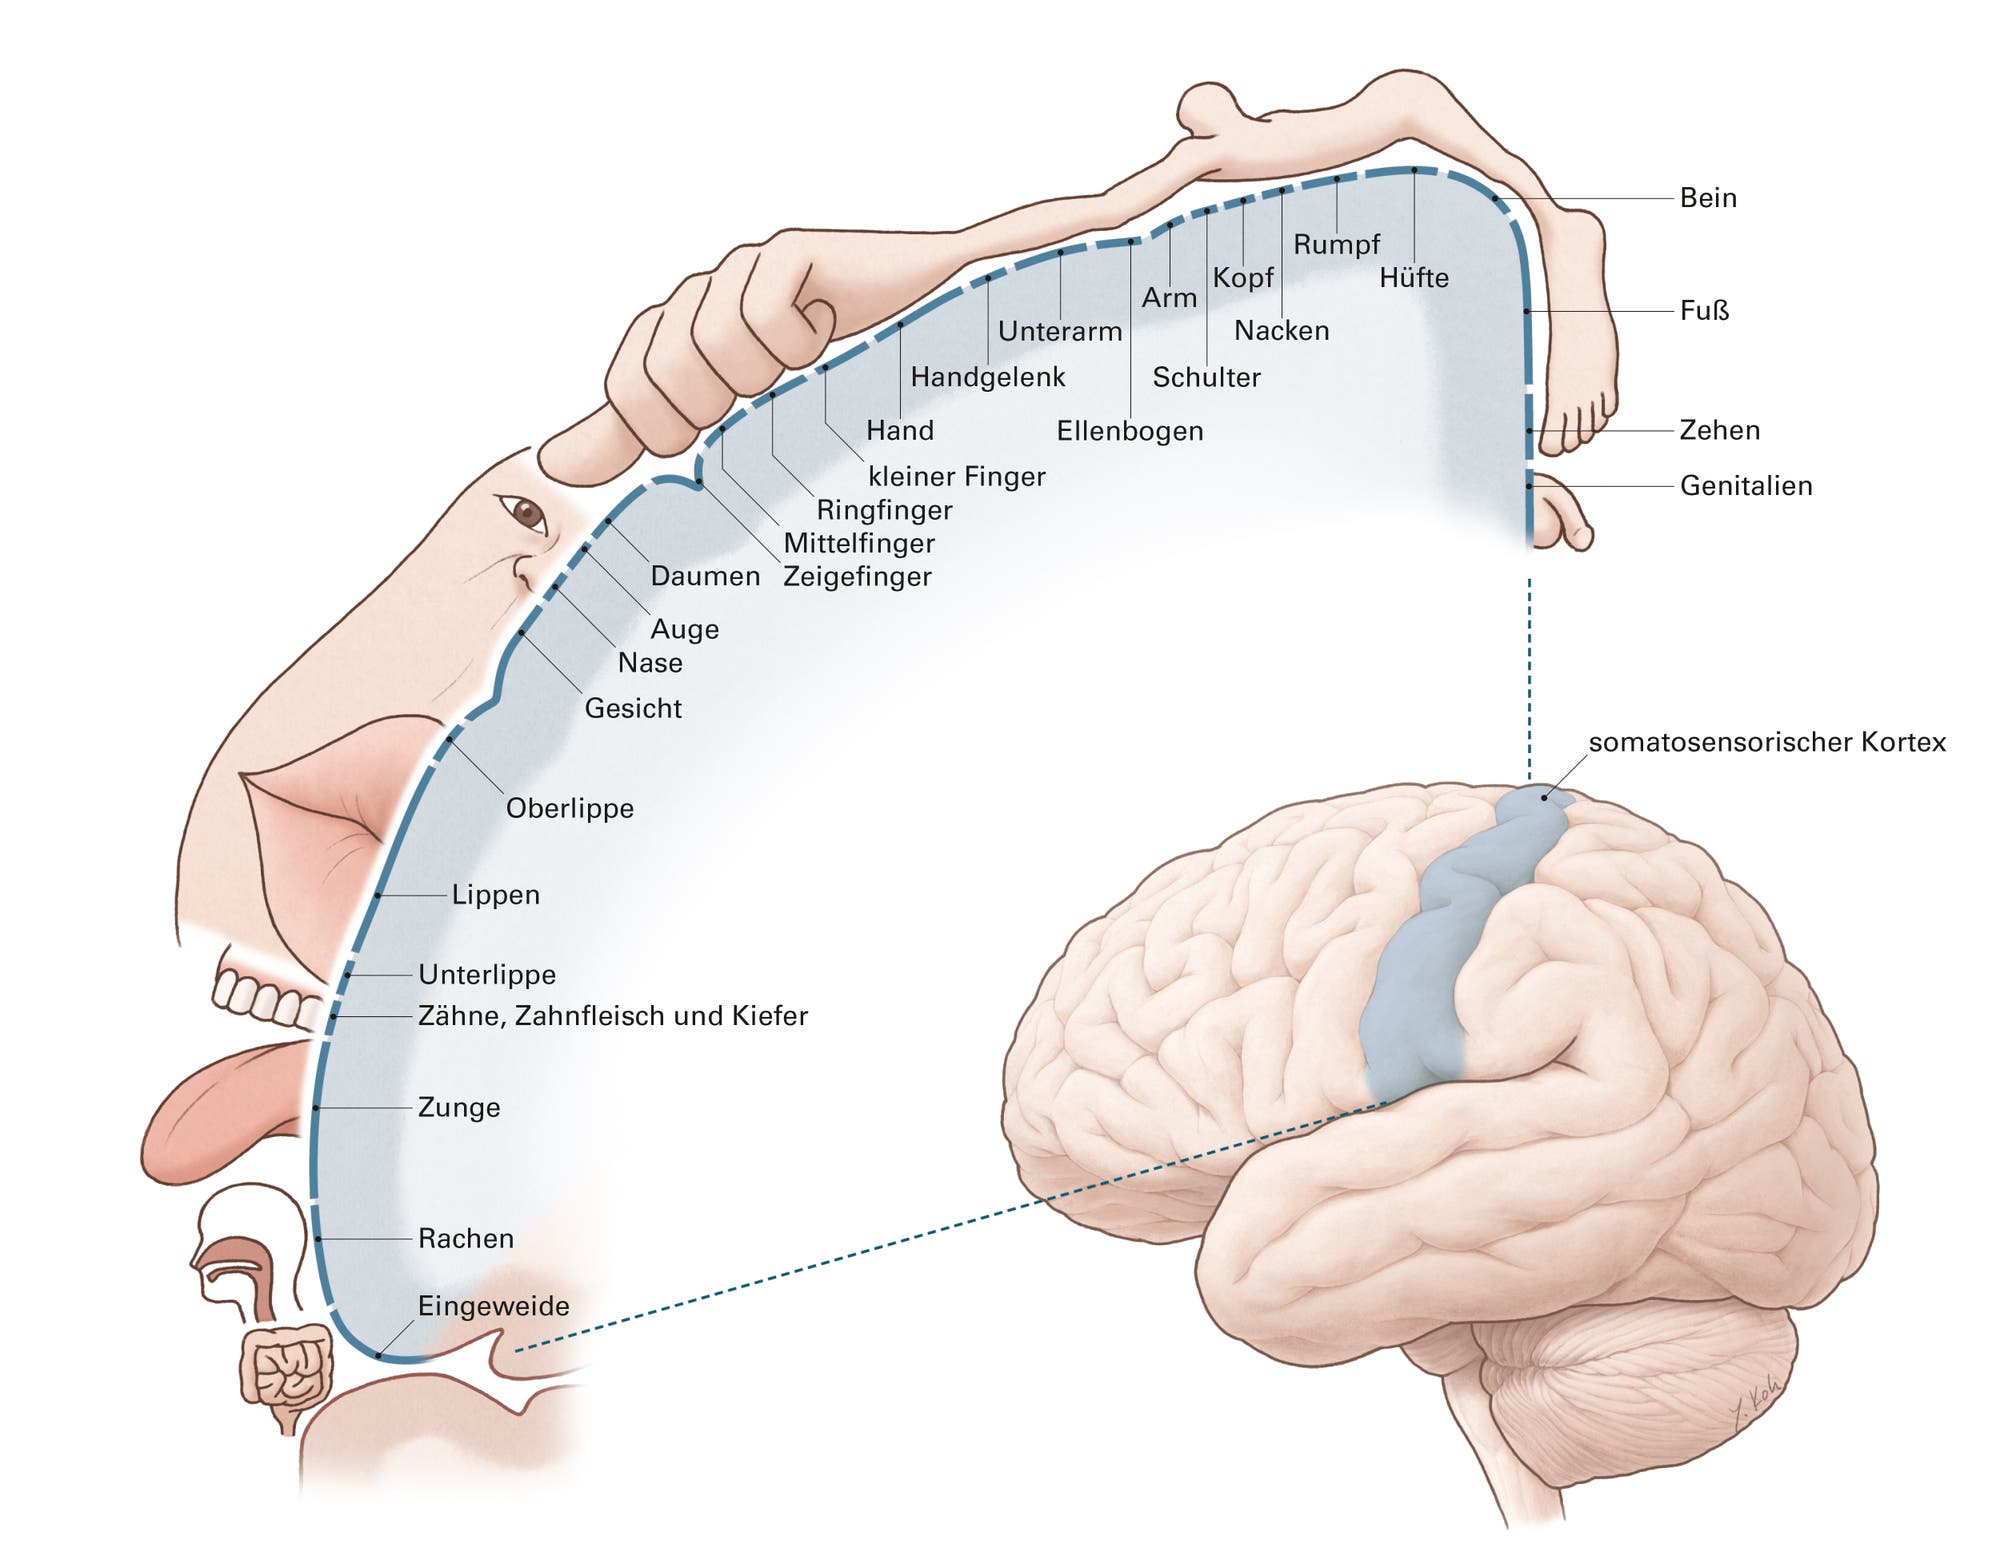 Zeichnung des Homunkulus: die Repräsentation des menschlichen Körpers im somatosensorischen Kortex